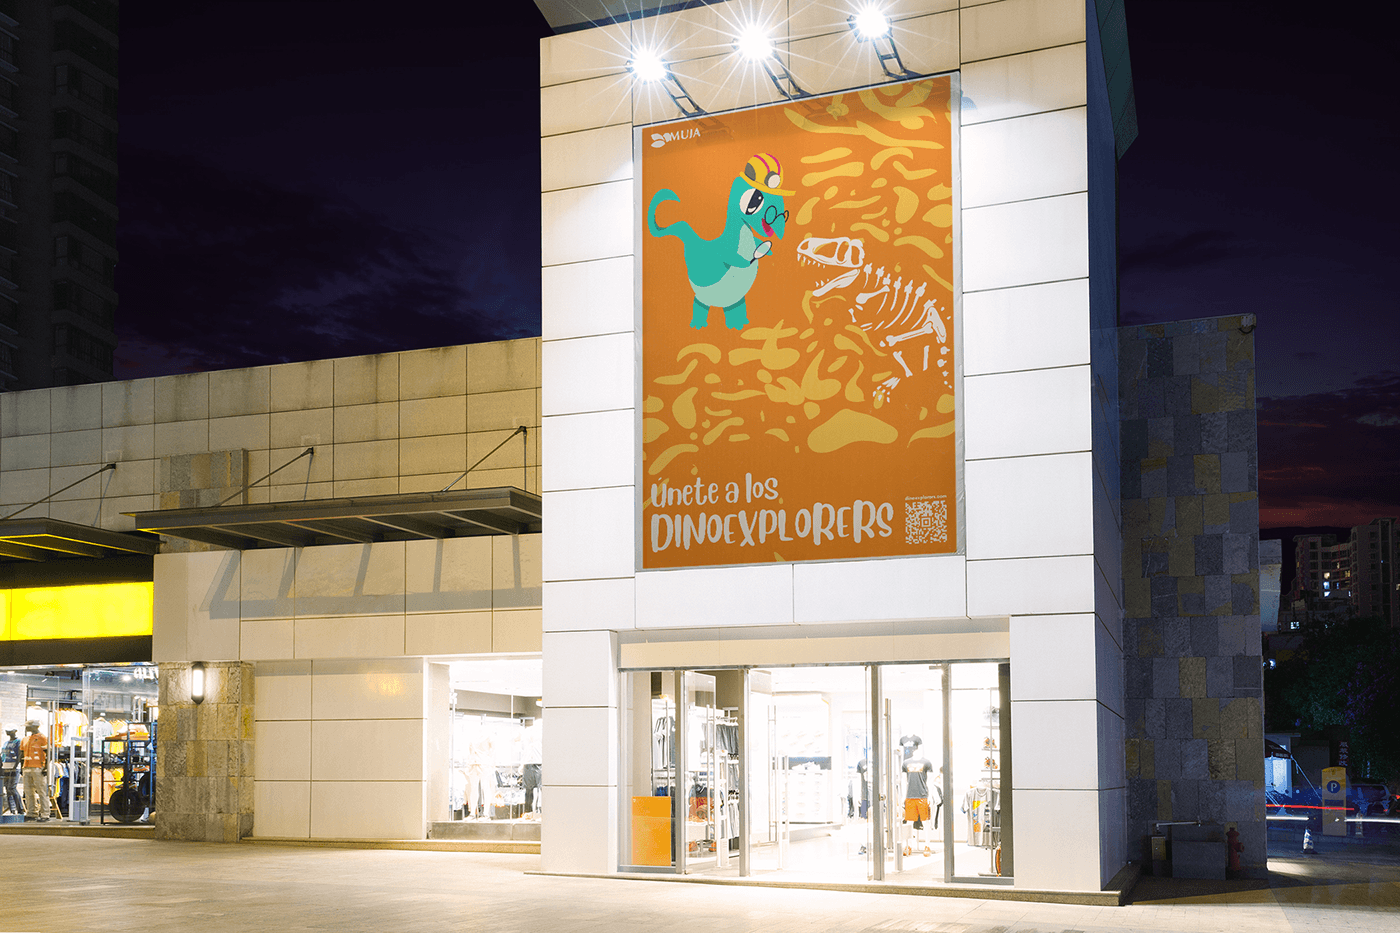 diseño gráfico campaña publicitaria publicidad add graphic design  muja asturias dinosaurs campaing Dinosaurios